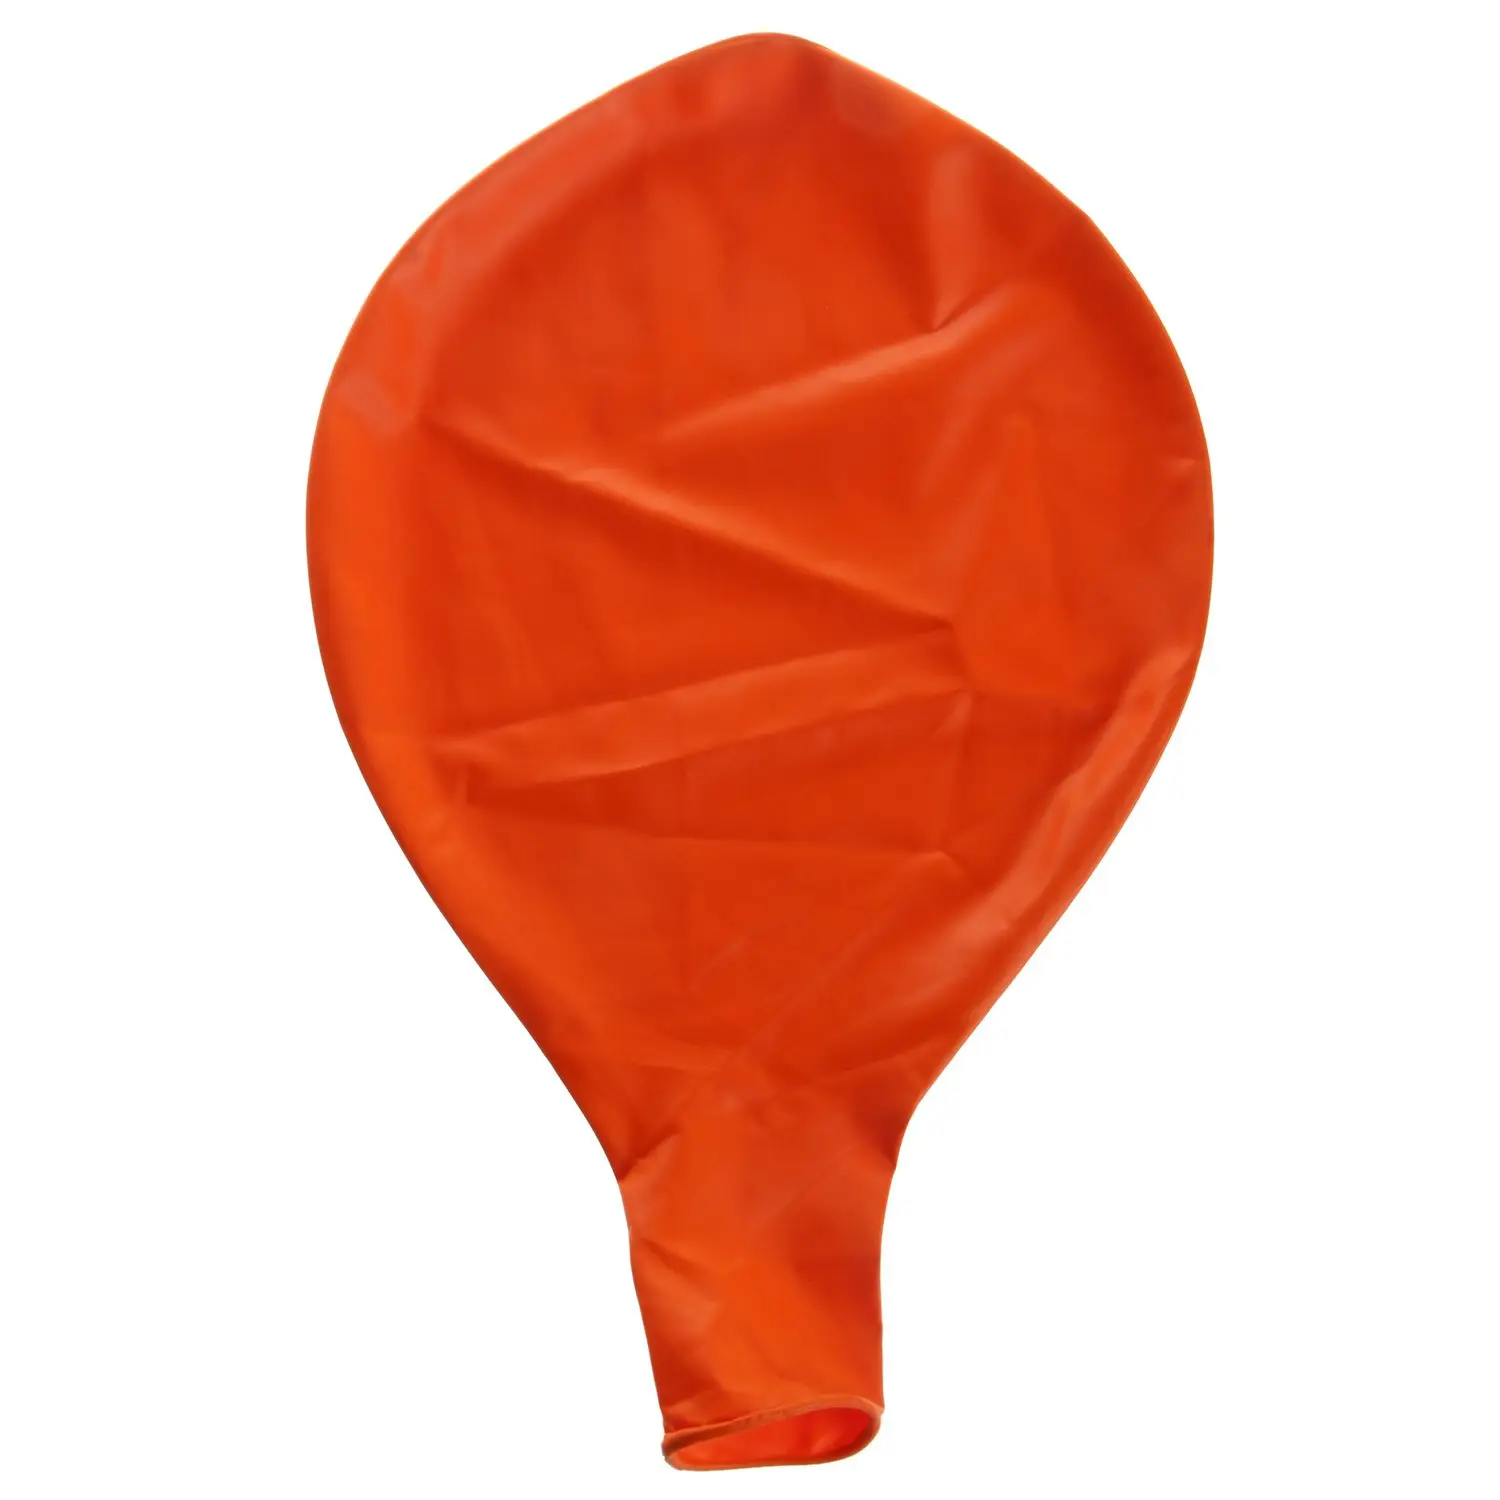 36 дюймов огромные латексные воздушные шары(премиум качества гелия), упаковка из 12 шт, обычный Форма - Цвет: Orange